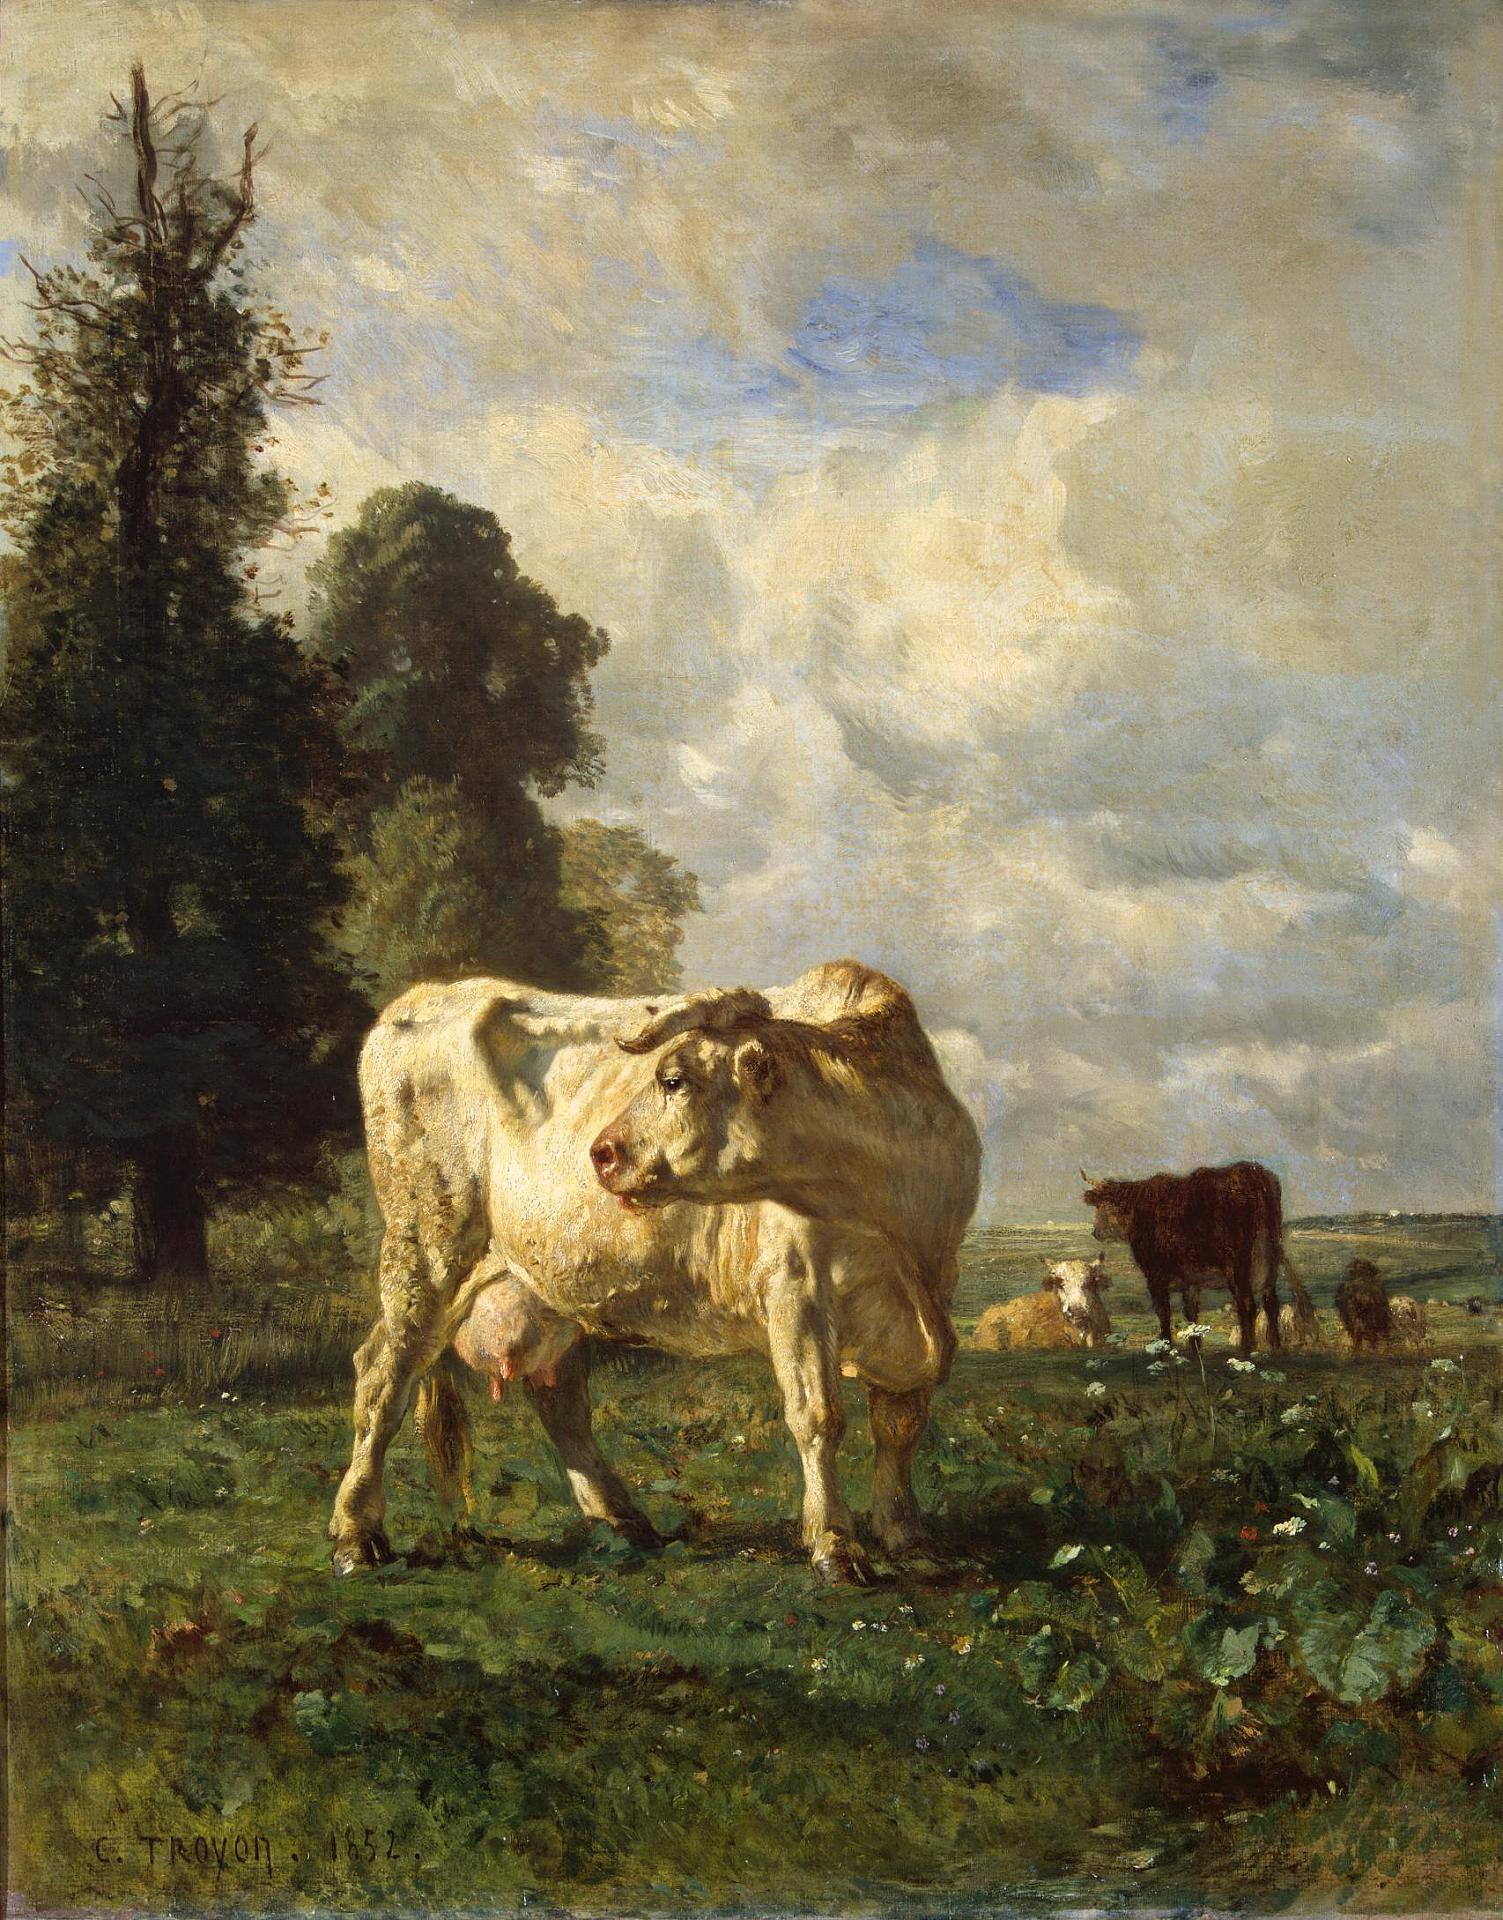 Констан Тройон. "Коровы в поле". Около 1852. Эрмитаж, Санкт-Петербург.